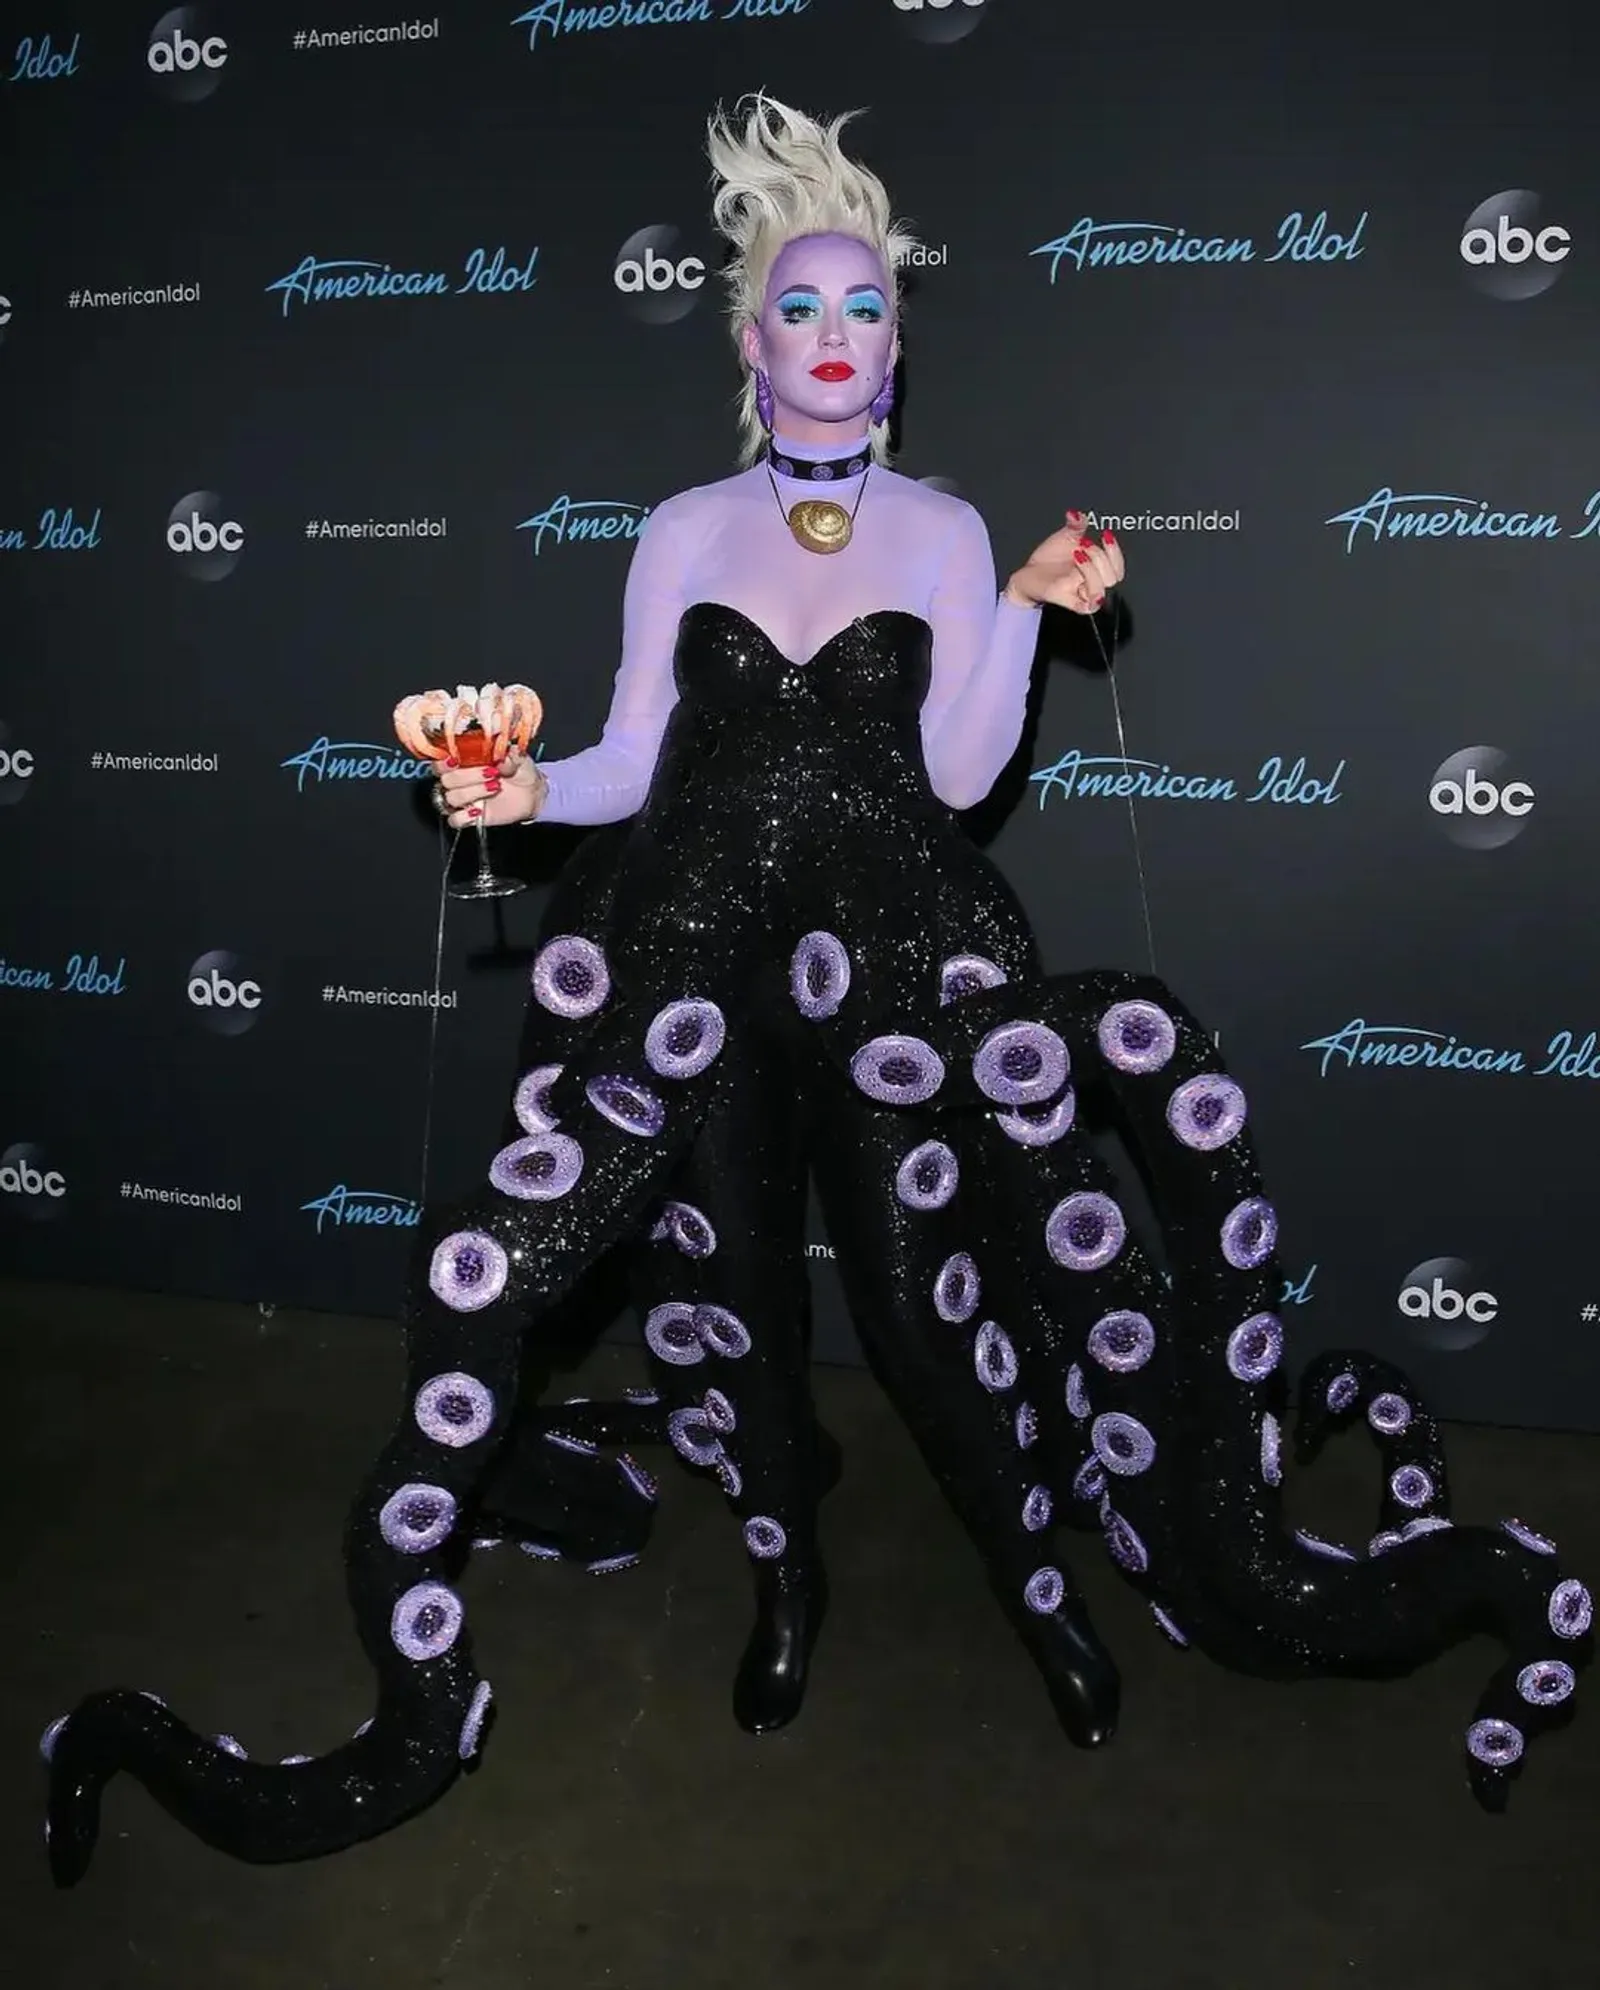 Deretan Gaya Katy Perry Jadi Karakter Disney di American Idol